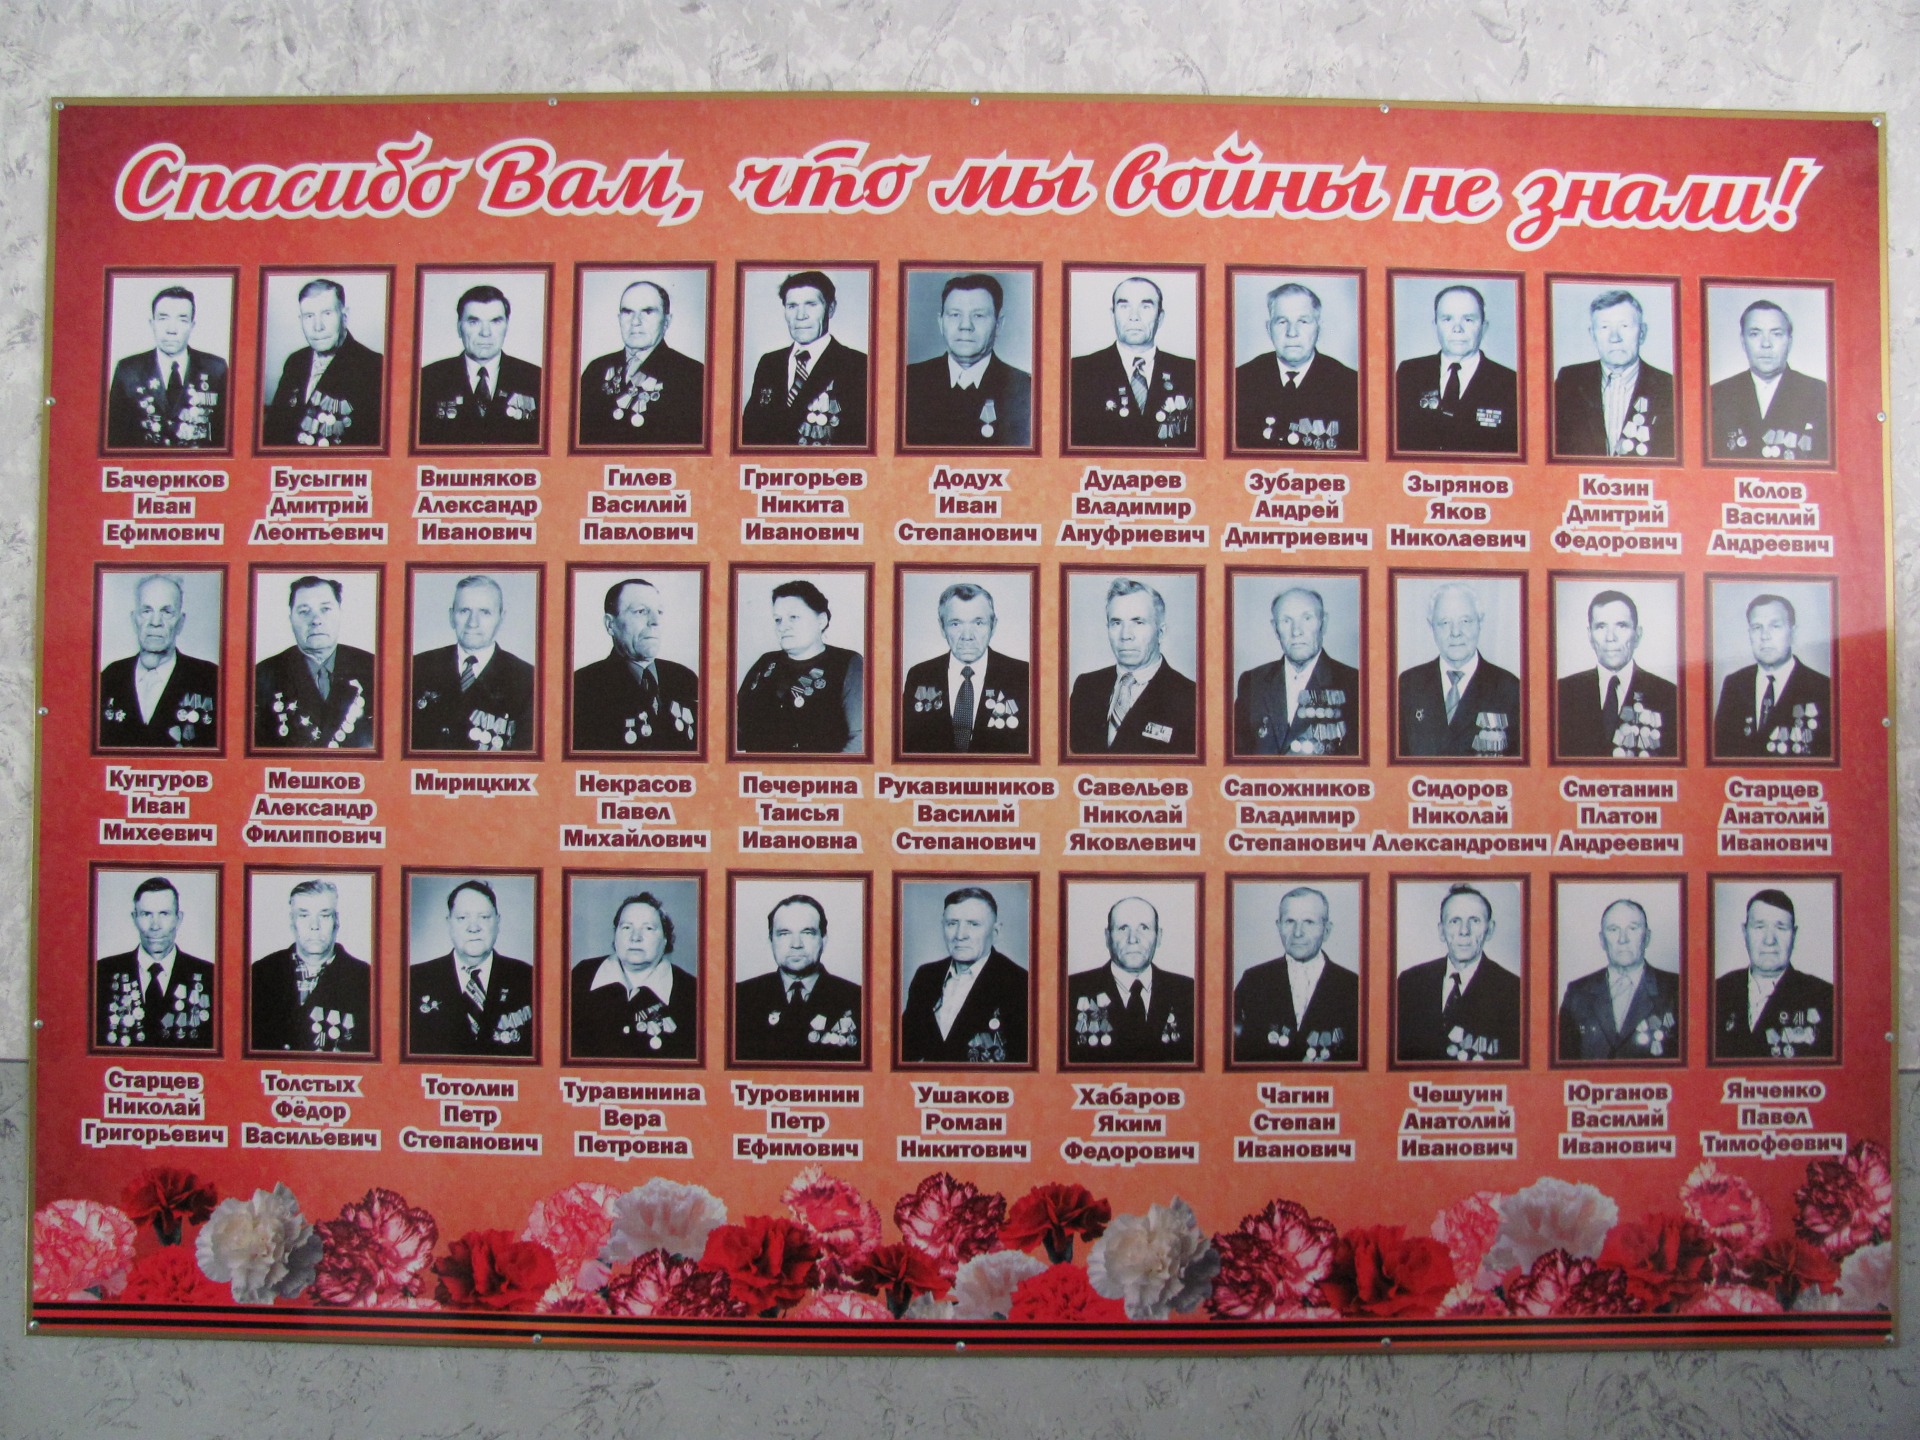 В административном здании акционерного общества «АВТОТРАНС» размещена доска памяти работников, участников Великой Отечественной войны.